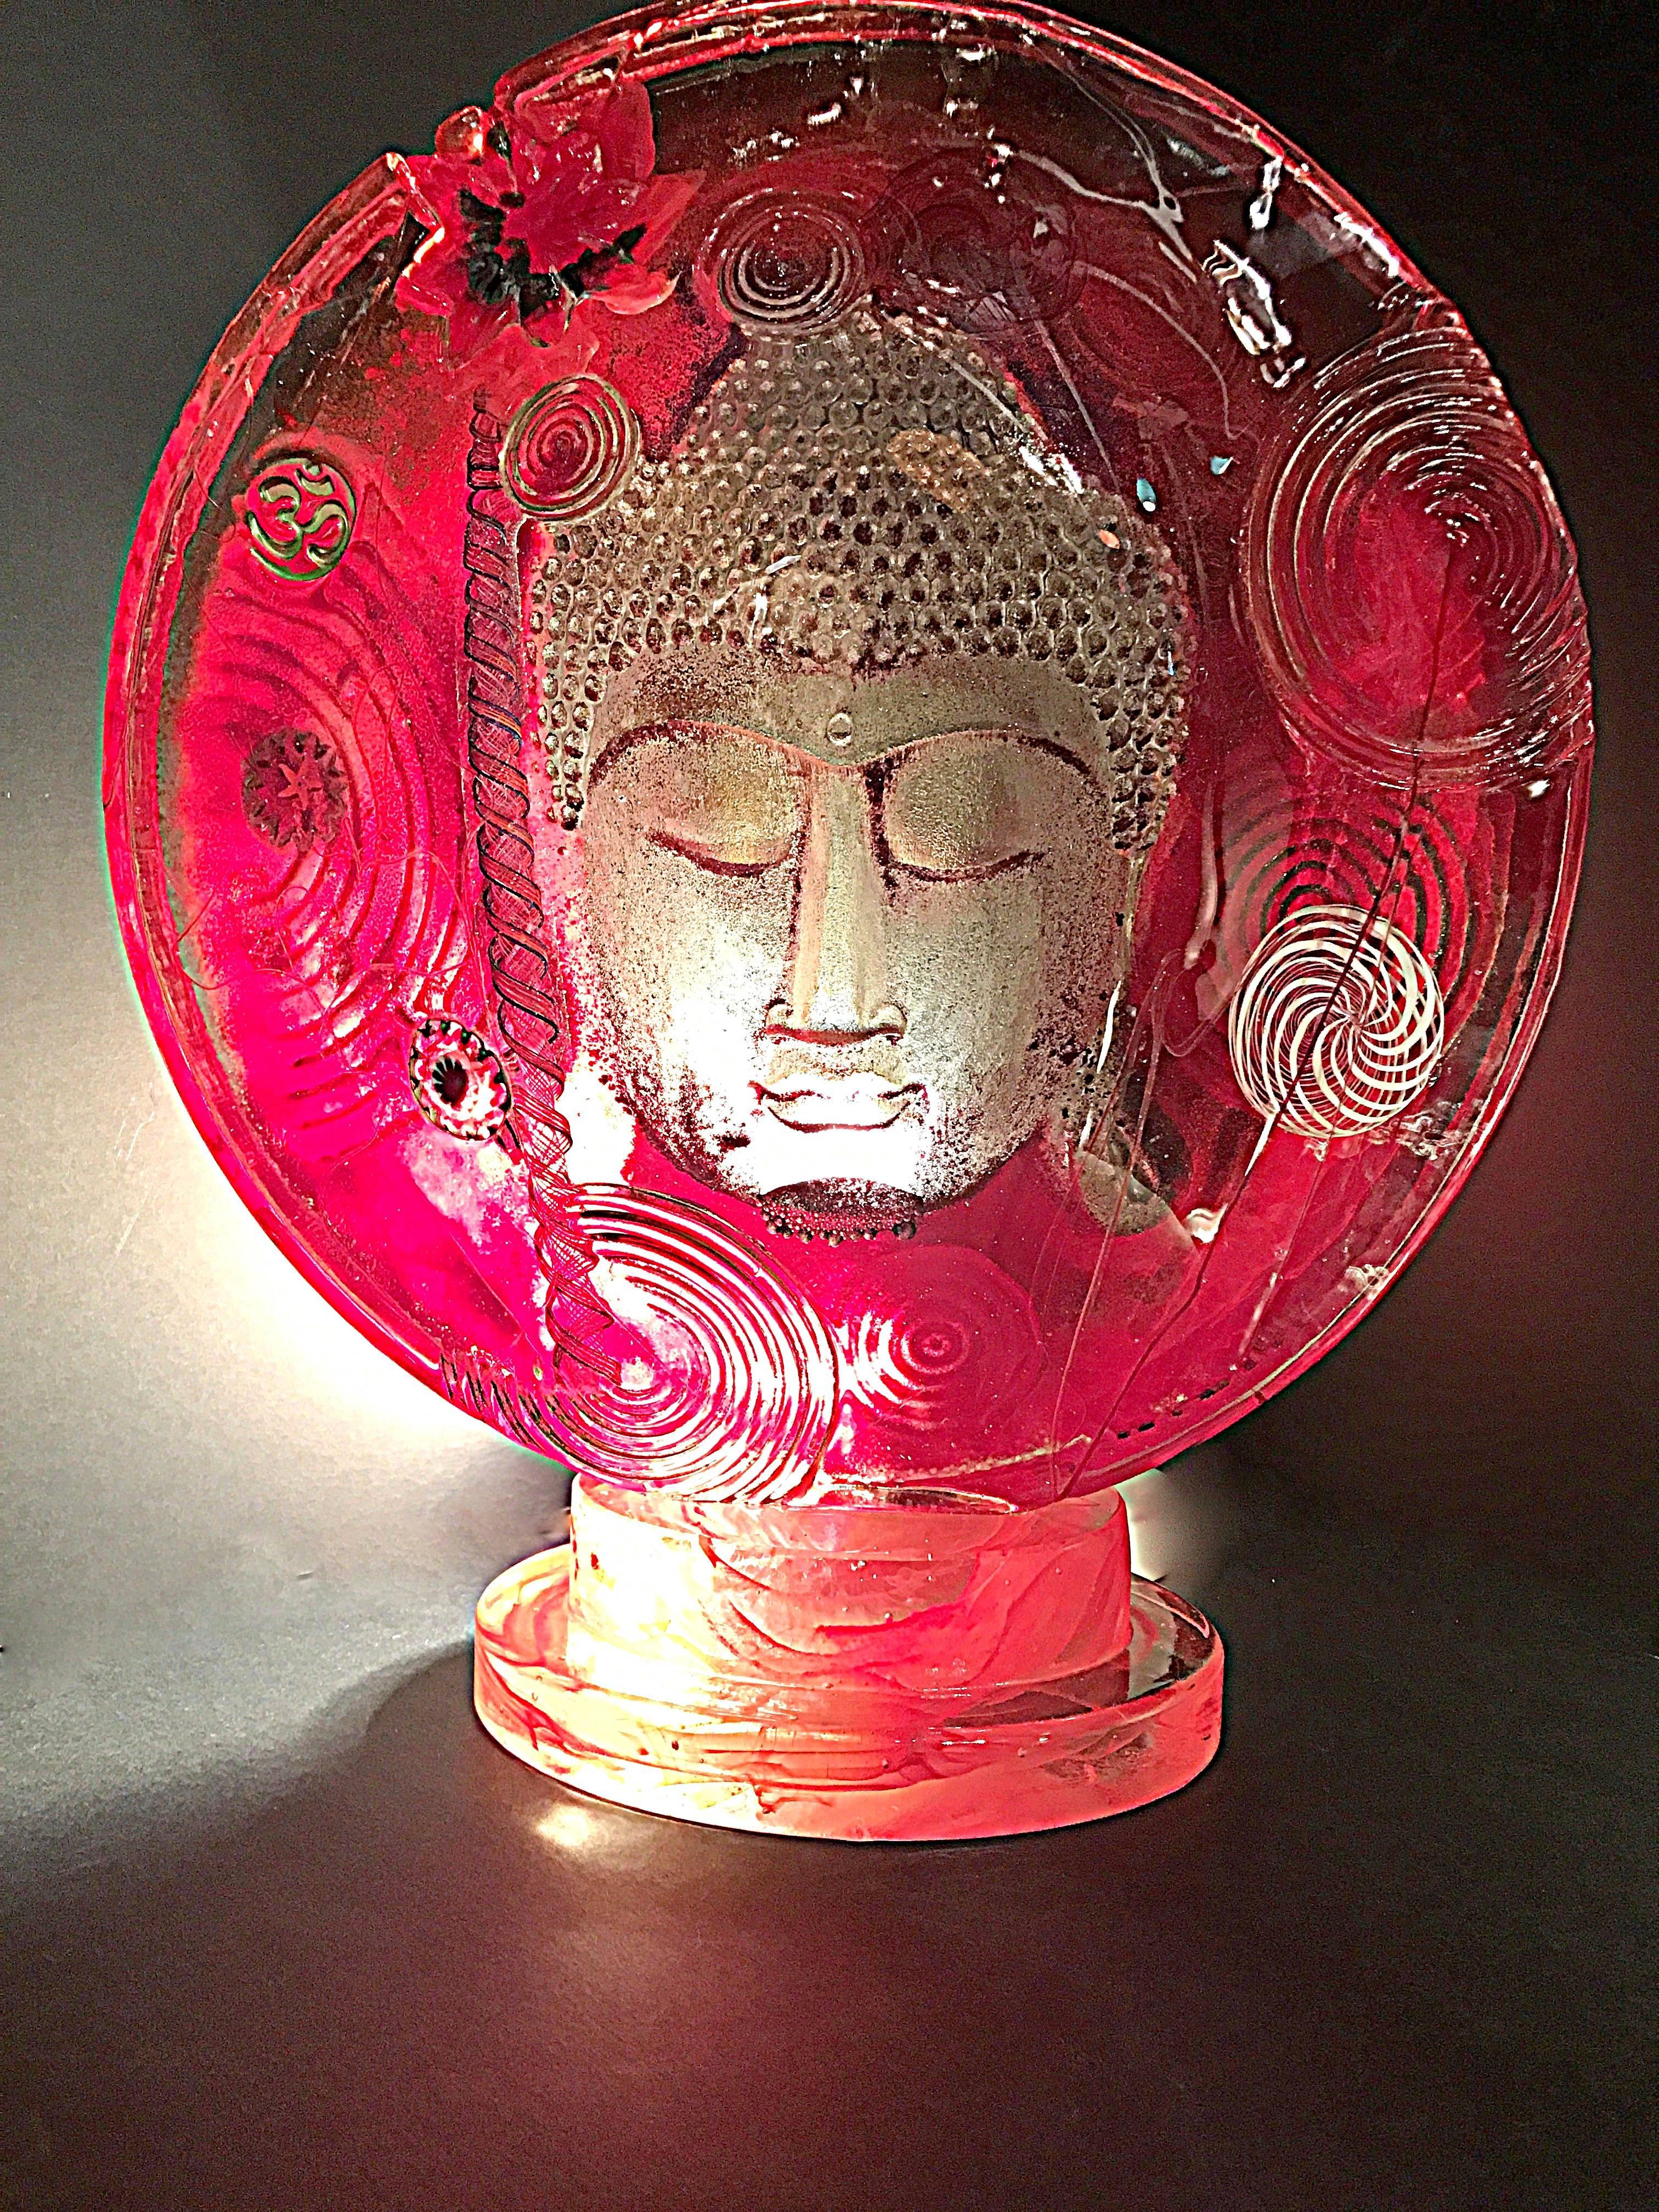 Les différents visages de Bouddha sont représentés à l'aide d'une coulée de verre très épaisse avec inclusion de couleurs en couches, ce qui permet de créer un visage flottant, plongé dans la méditation. Les faces sont saupoudrées de feuilles